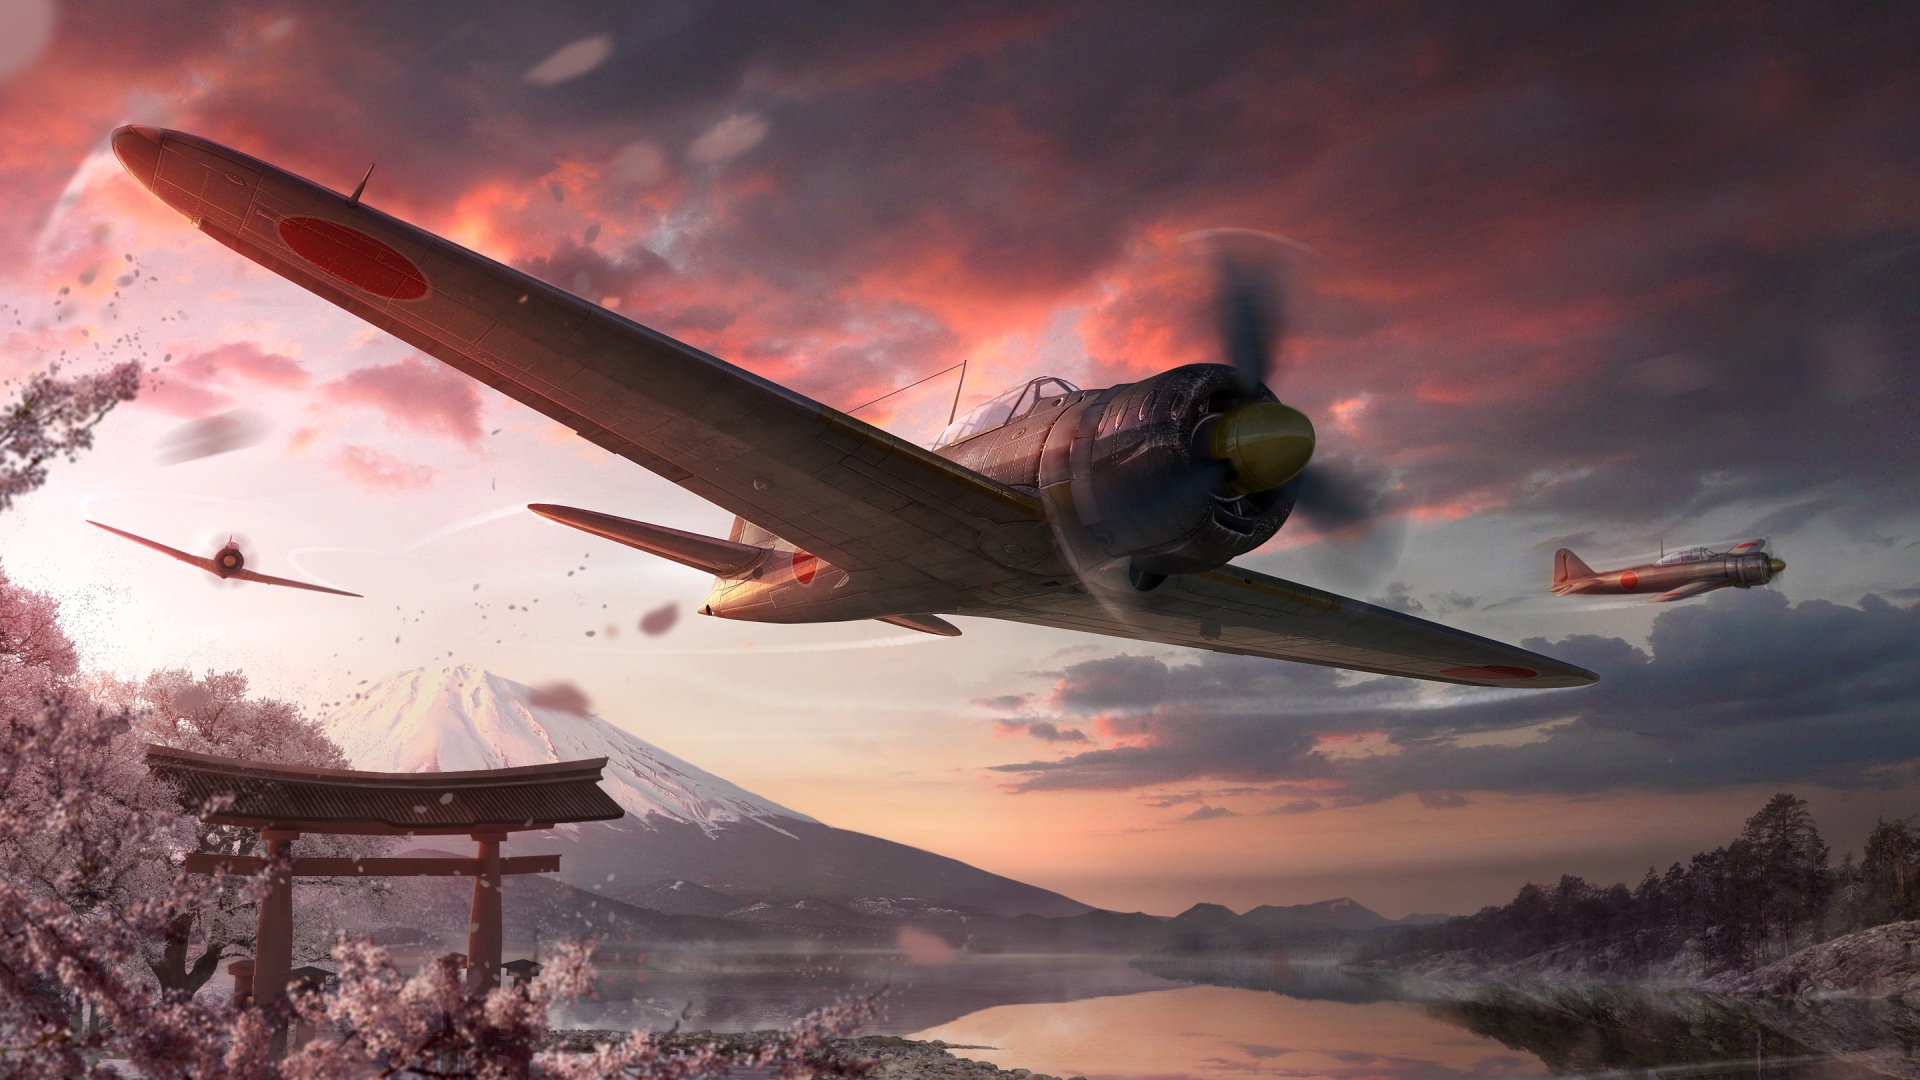 Скачать обои бесплатно Видеоигры, Мир Боевых Самолетов картинка на рабочий стол ПК